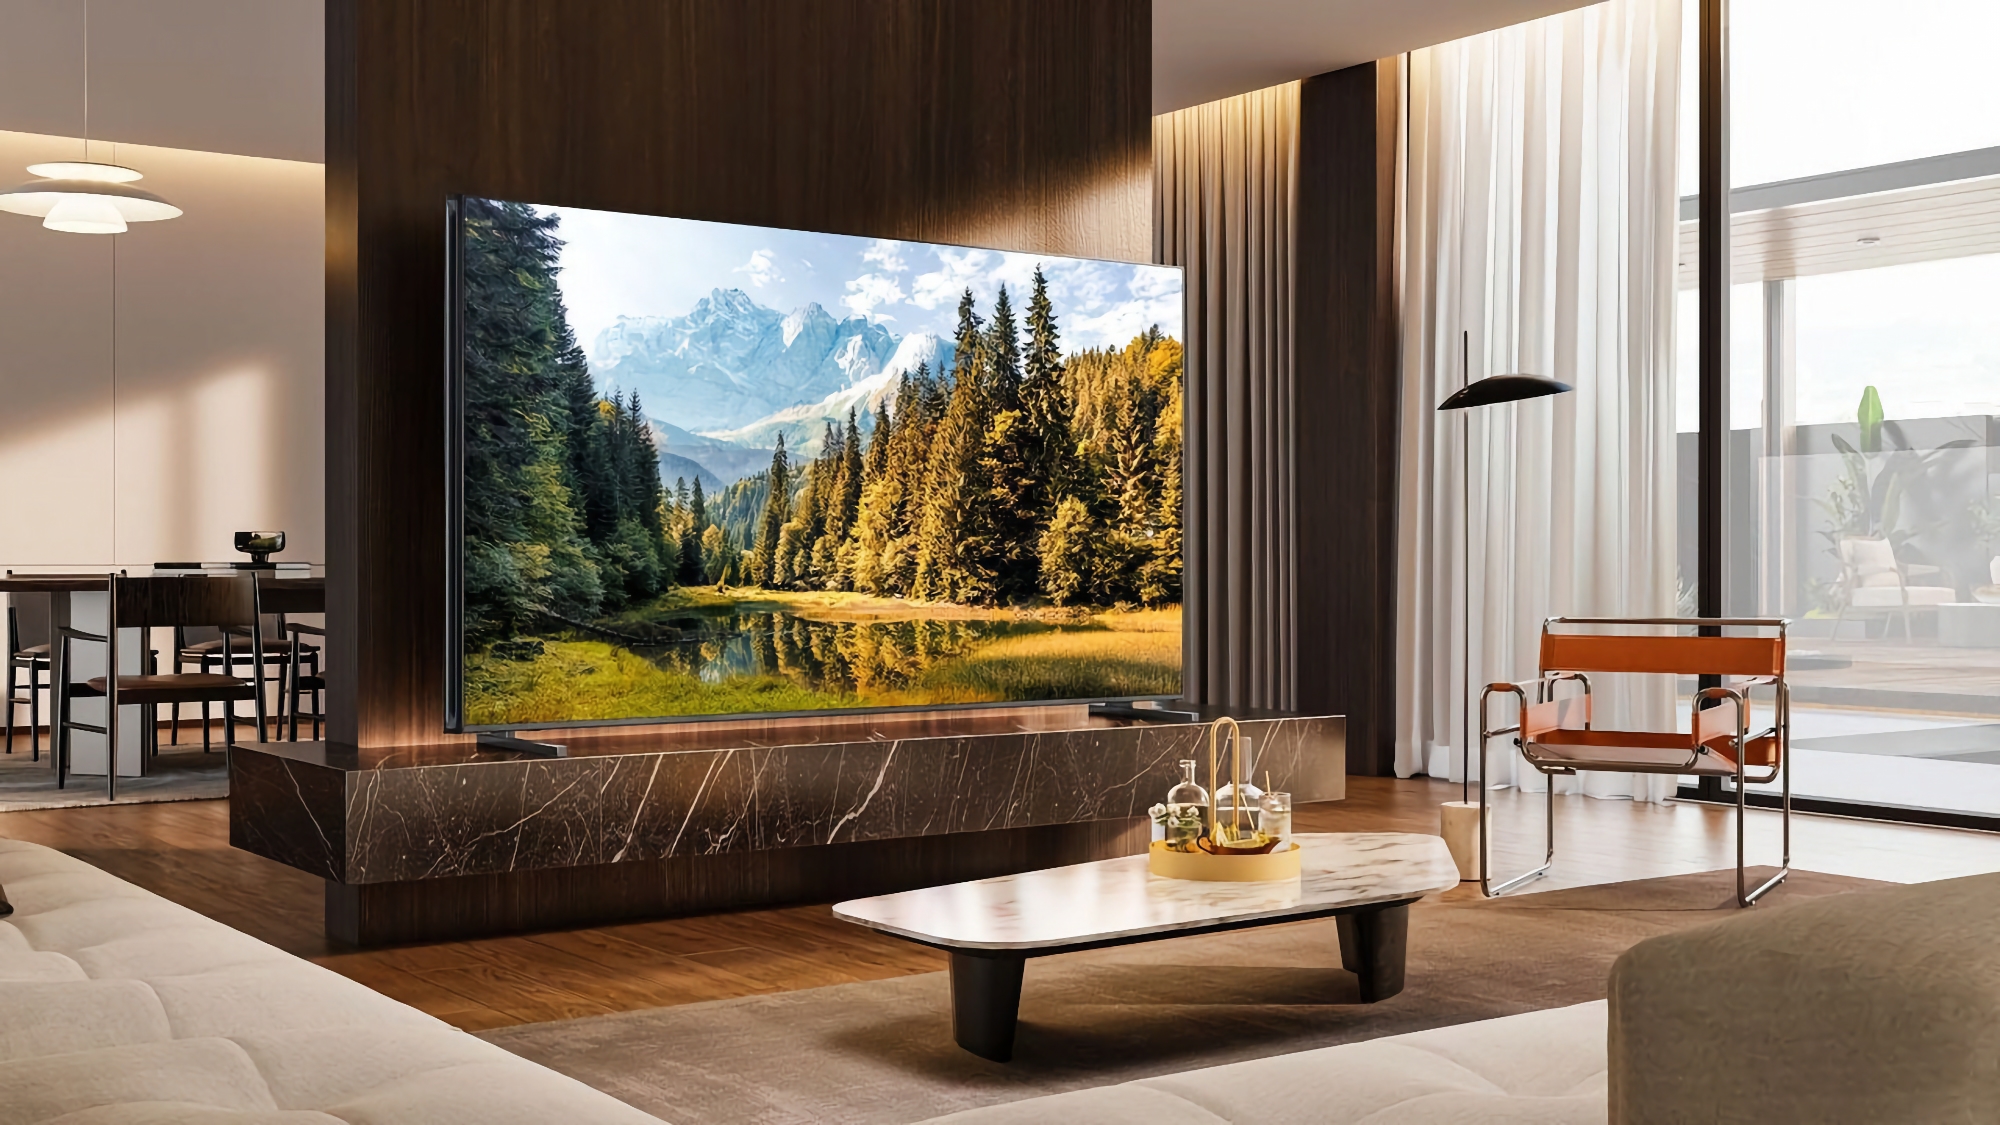 Hisense U9N: Smart TV con pantallas Mini LED, brillo de 5000 nits y compatibilidad con 144 Hz